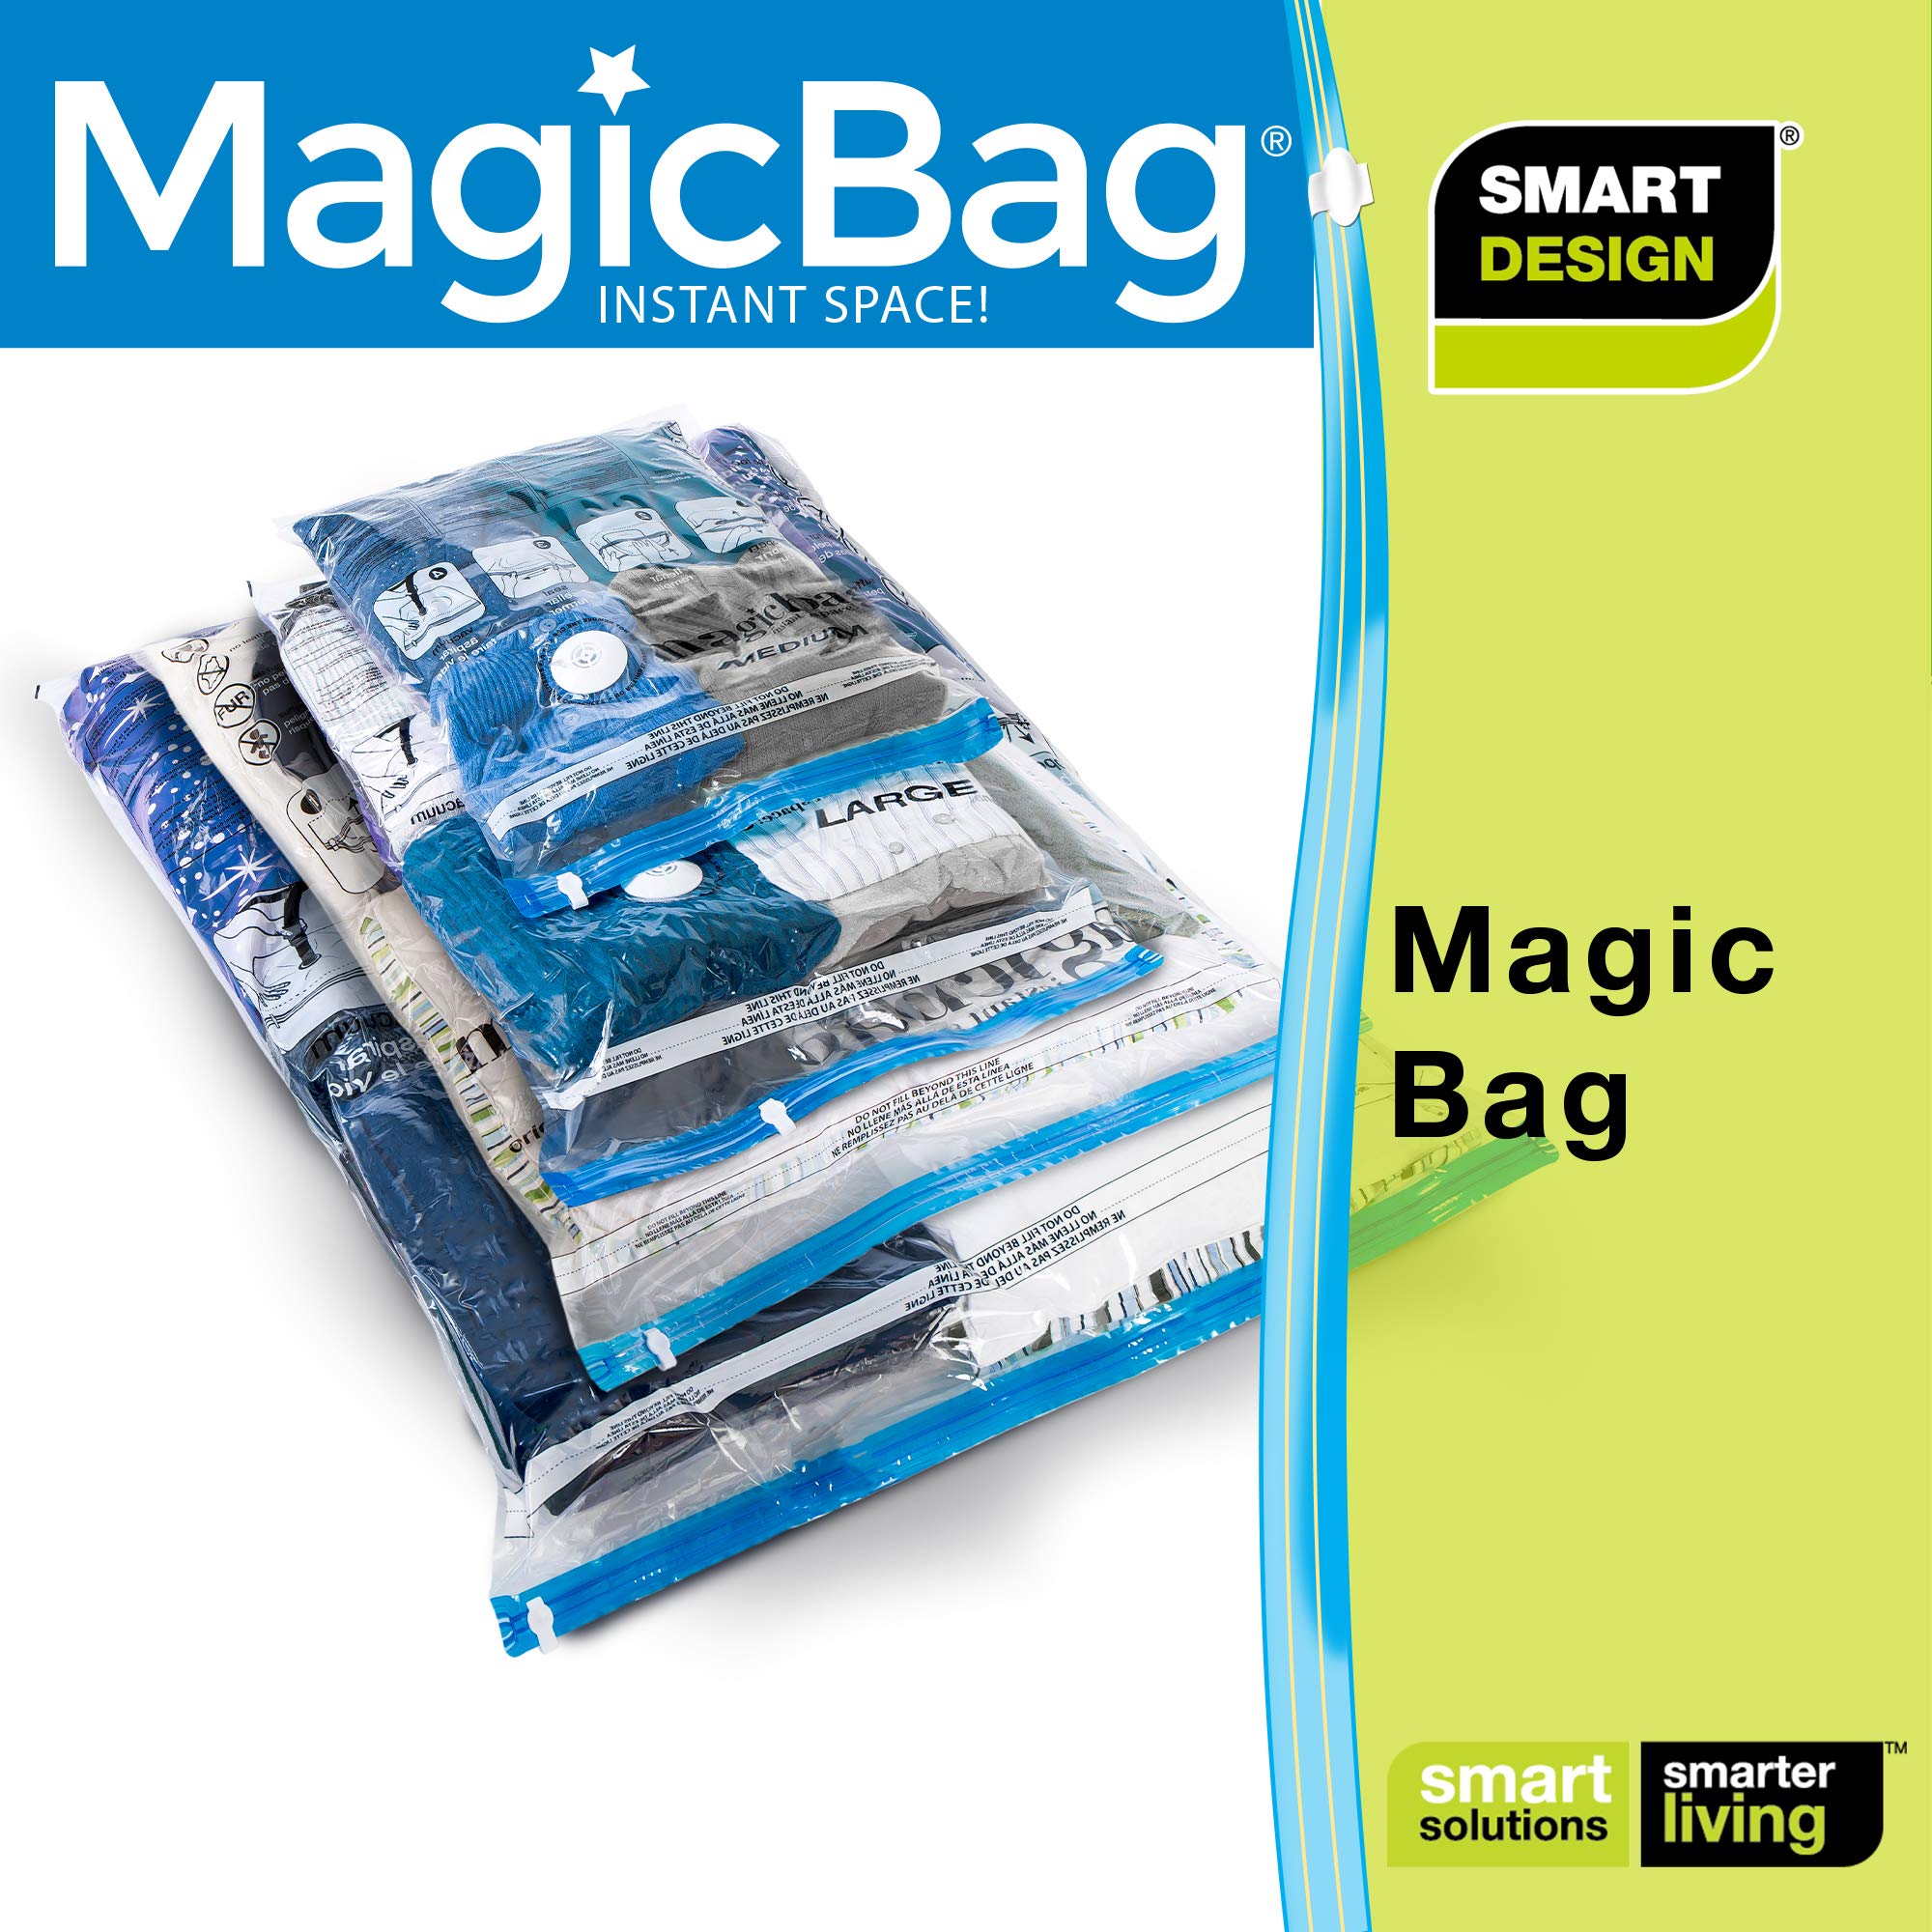 https://www.shopsmartdesign.com/cdn/shop/products/magicbag-instant-space-saver-storage-combo-flat-smart-design-magicbag-5765412-200-incrementing-number-643554.jpg?v=1679340752